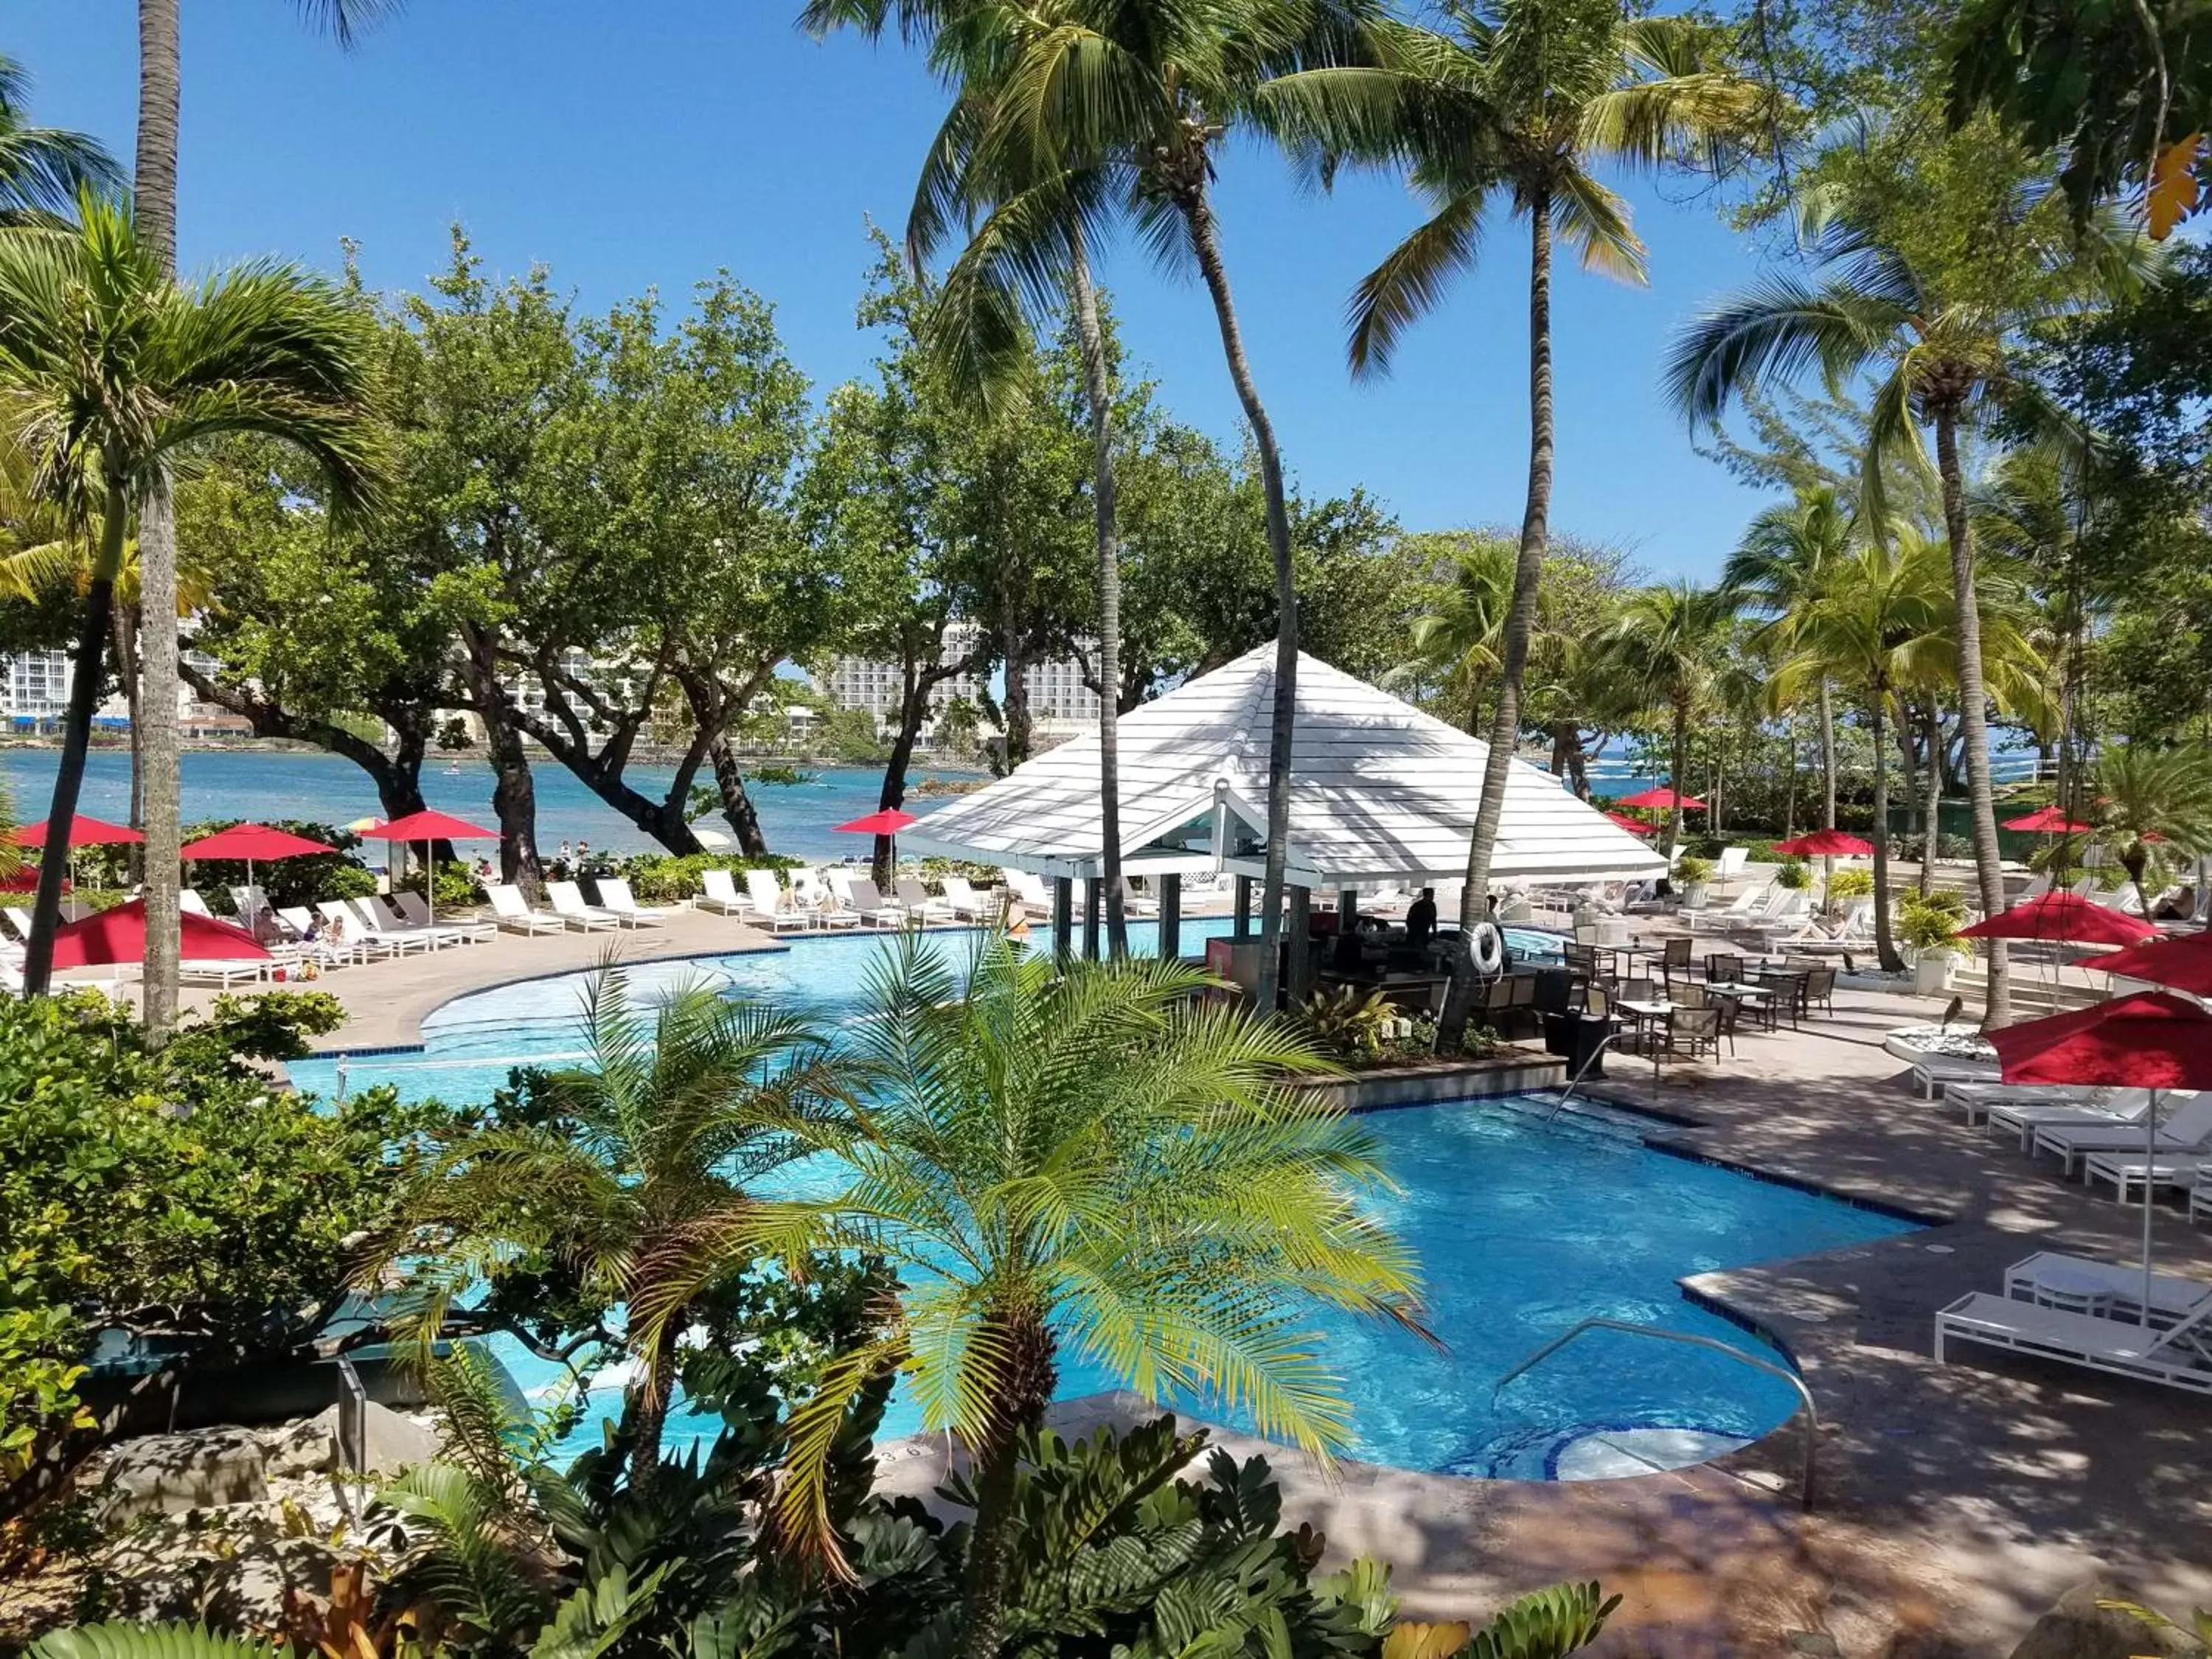 Pool View in The Condado Plaza Hilton